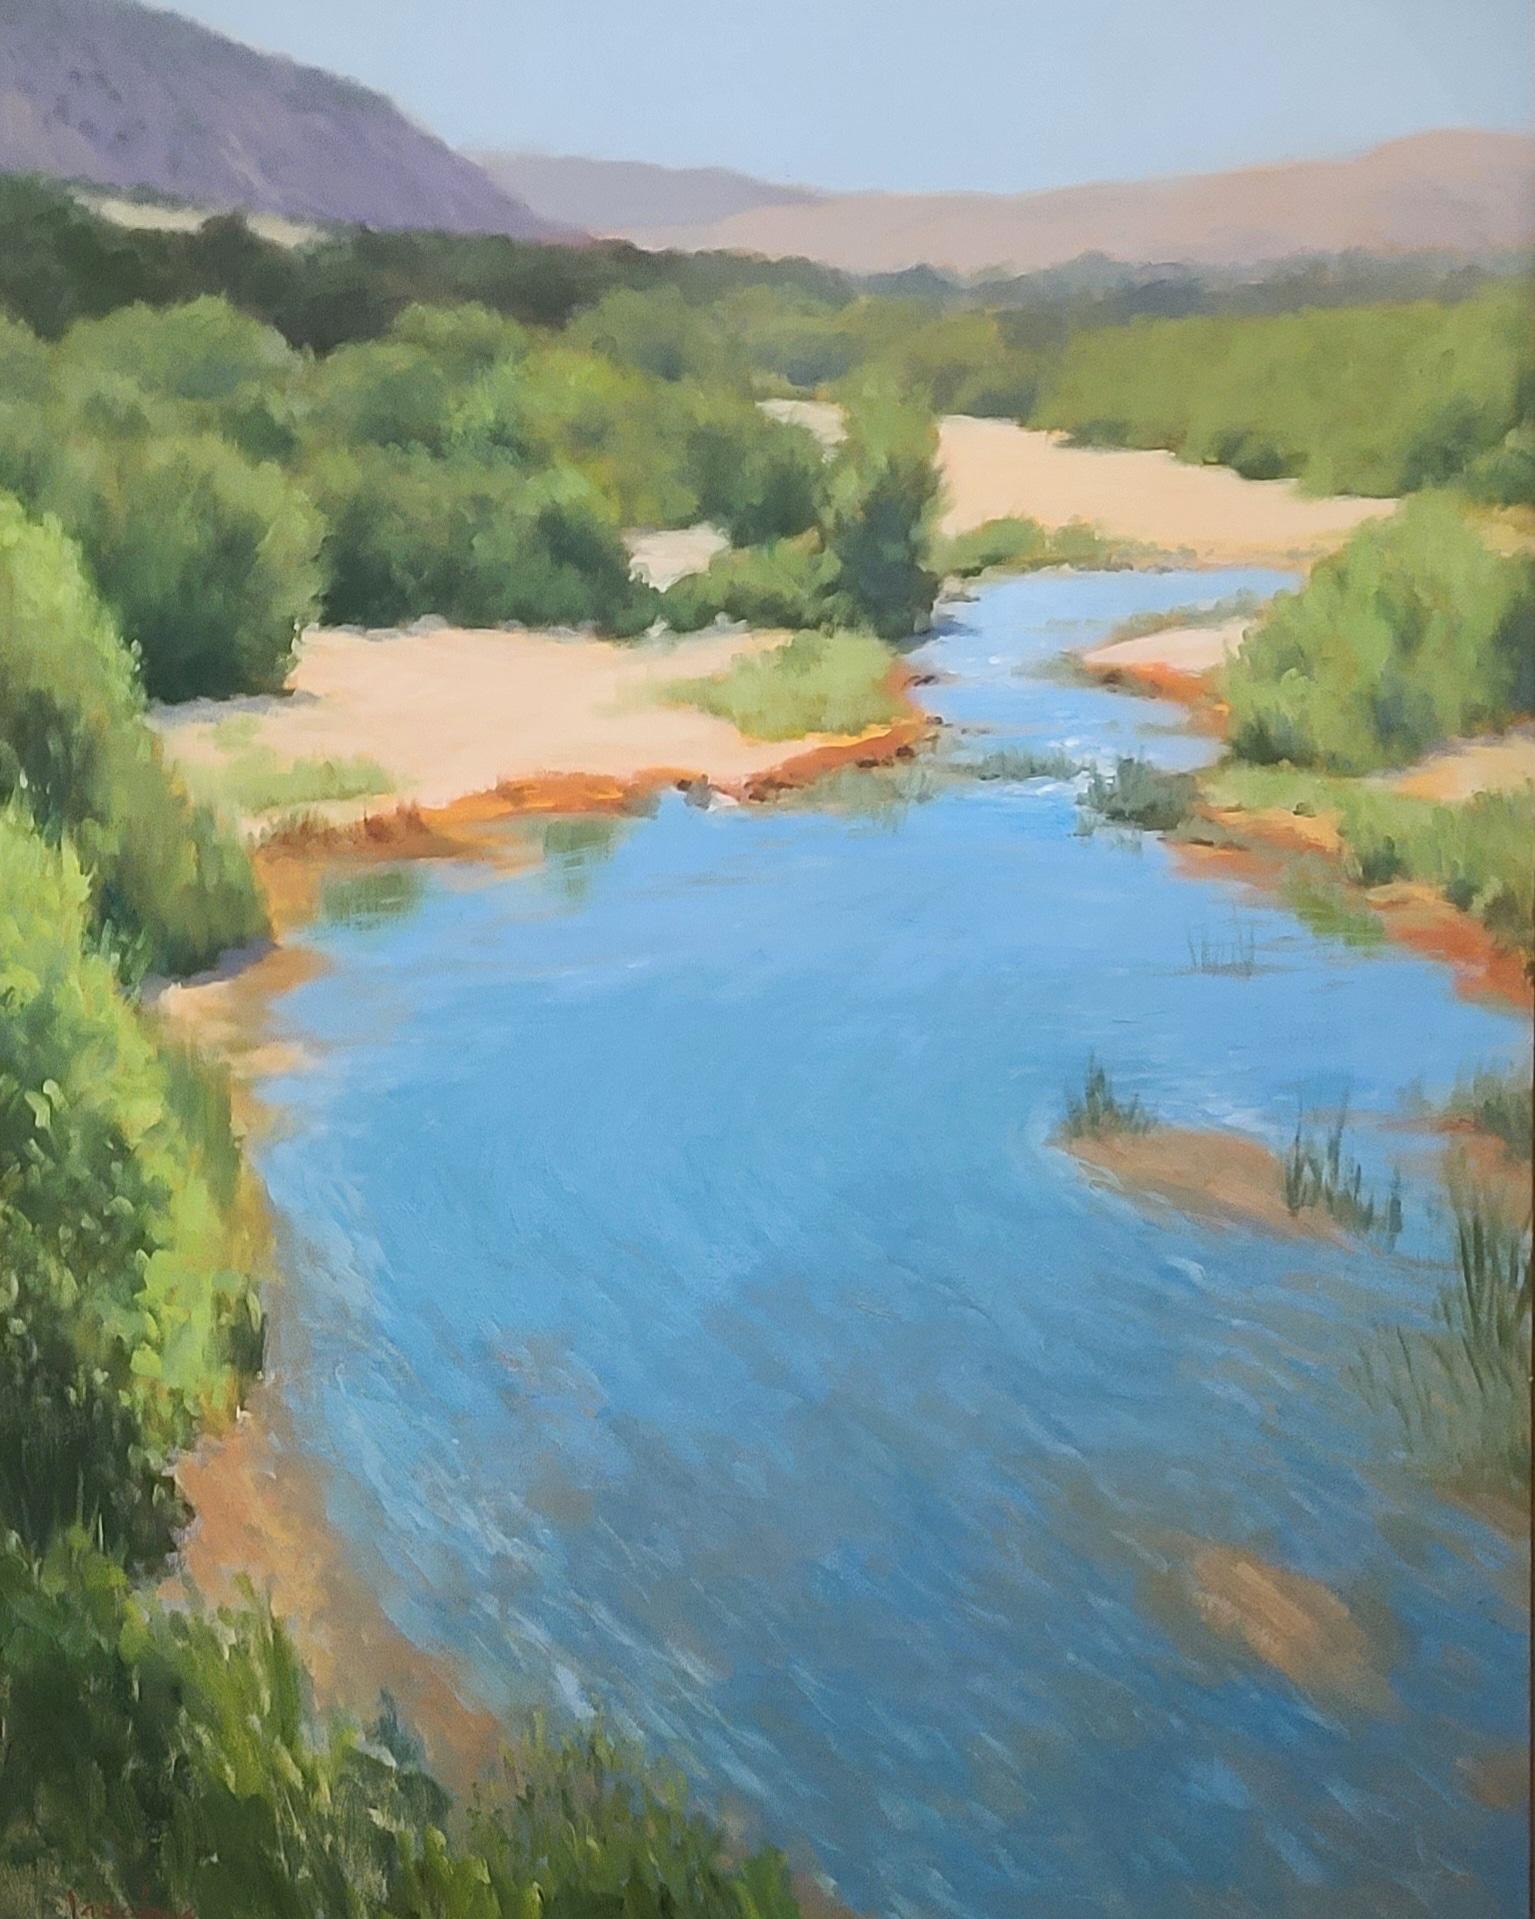 Landscape Painting Jacobus Baas - « Santa Ynez River Reflections », peinture de paysage californien 